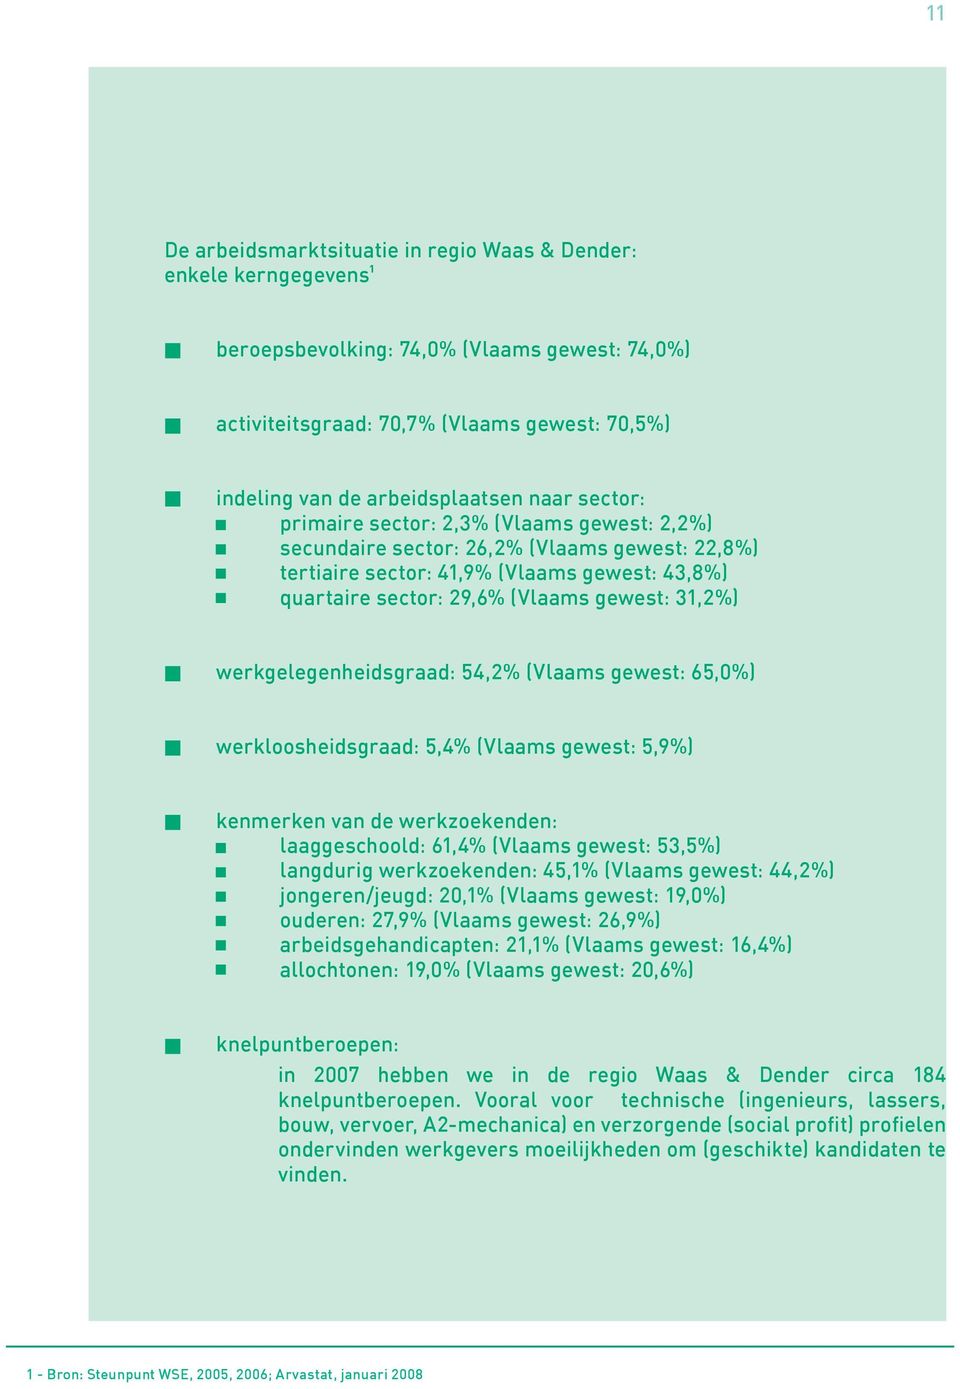 werkgelegenheidsgraad: 54,2% (Vlaams gewest: 65,0%) werkloosheidsgraad: 5,4% (Vlaams gewest: 5,9%) kenmerken van de werkzoekenden: laaggeschoold: 61,4% (Vlaams gewest: 53,5%) langdurig werkzoekenden: